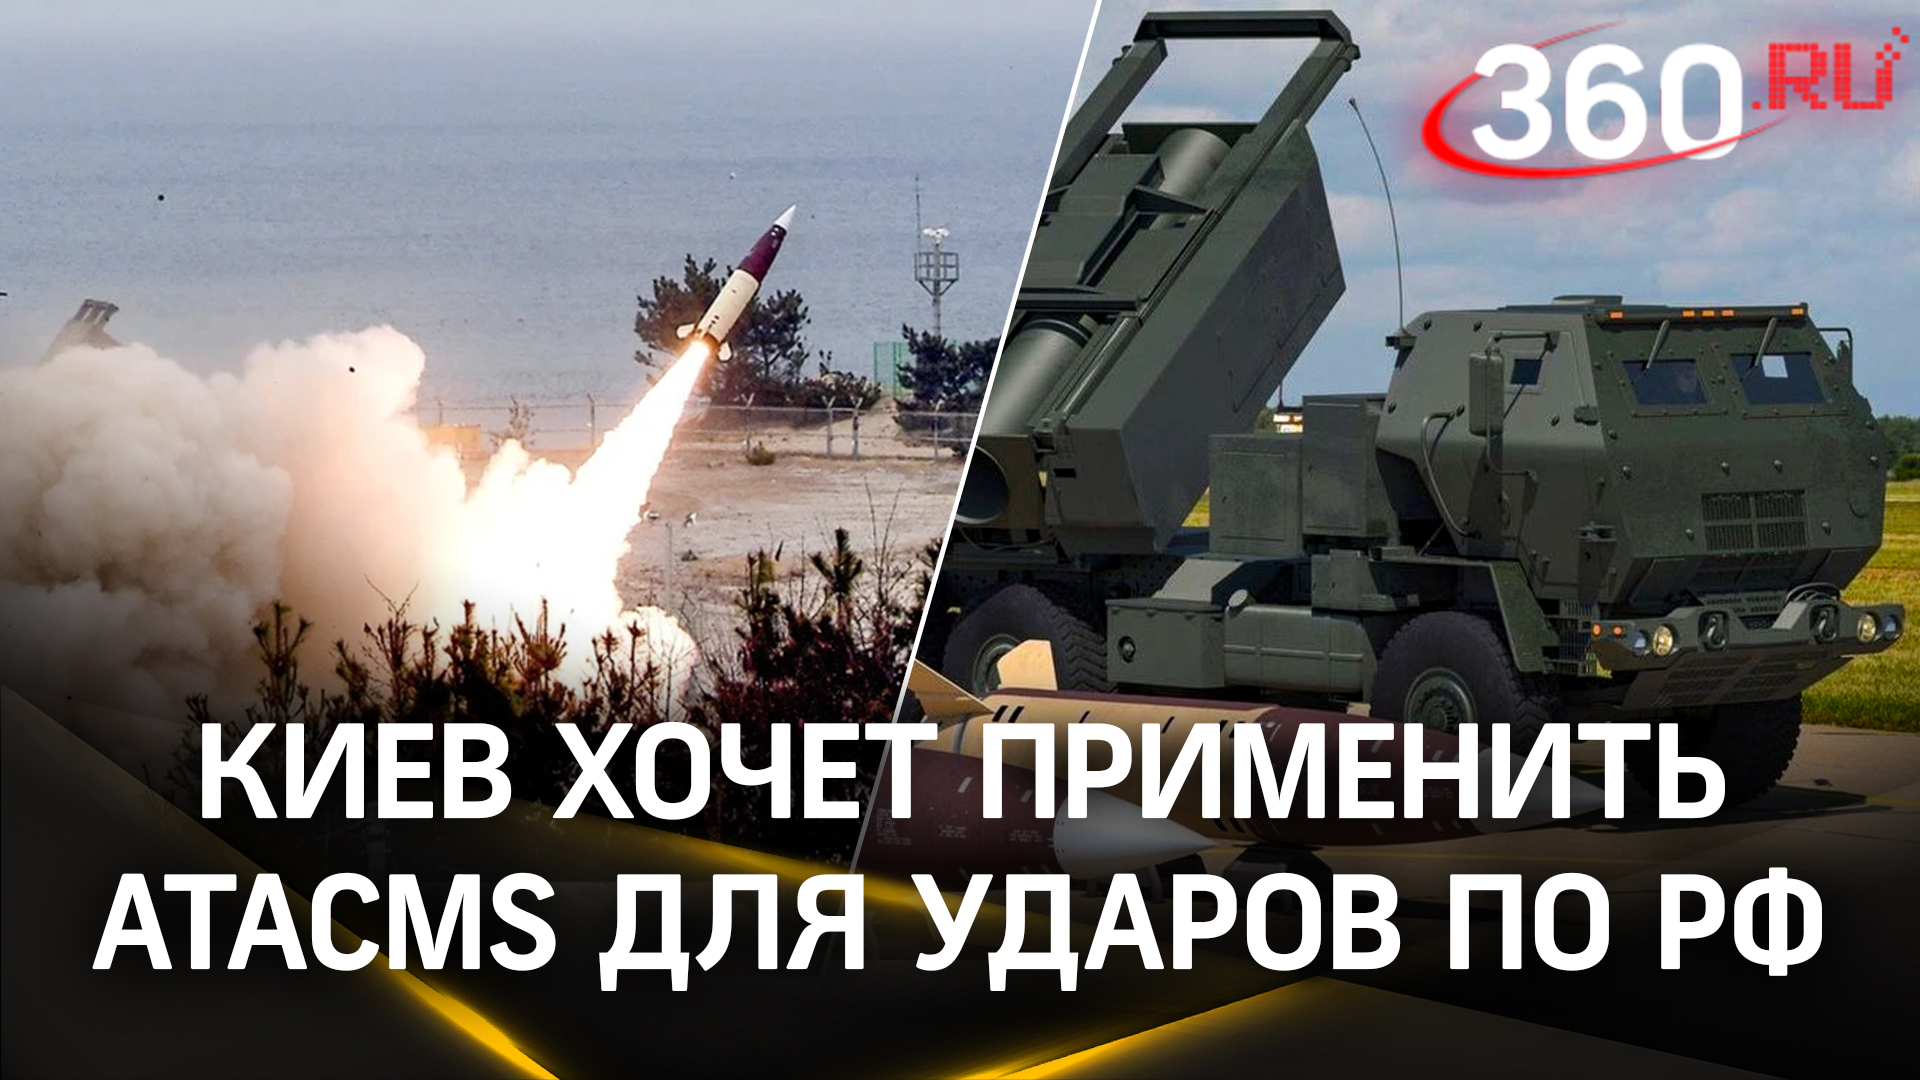 ATACMS есть, но хозяин запрещает: Киев выпрашивает у США разрешение бить по России ракетами